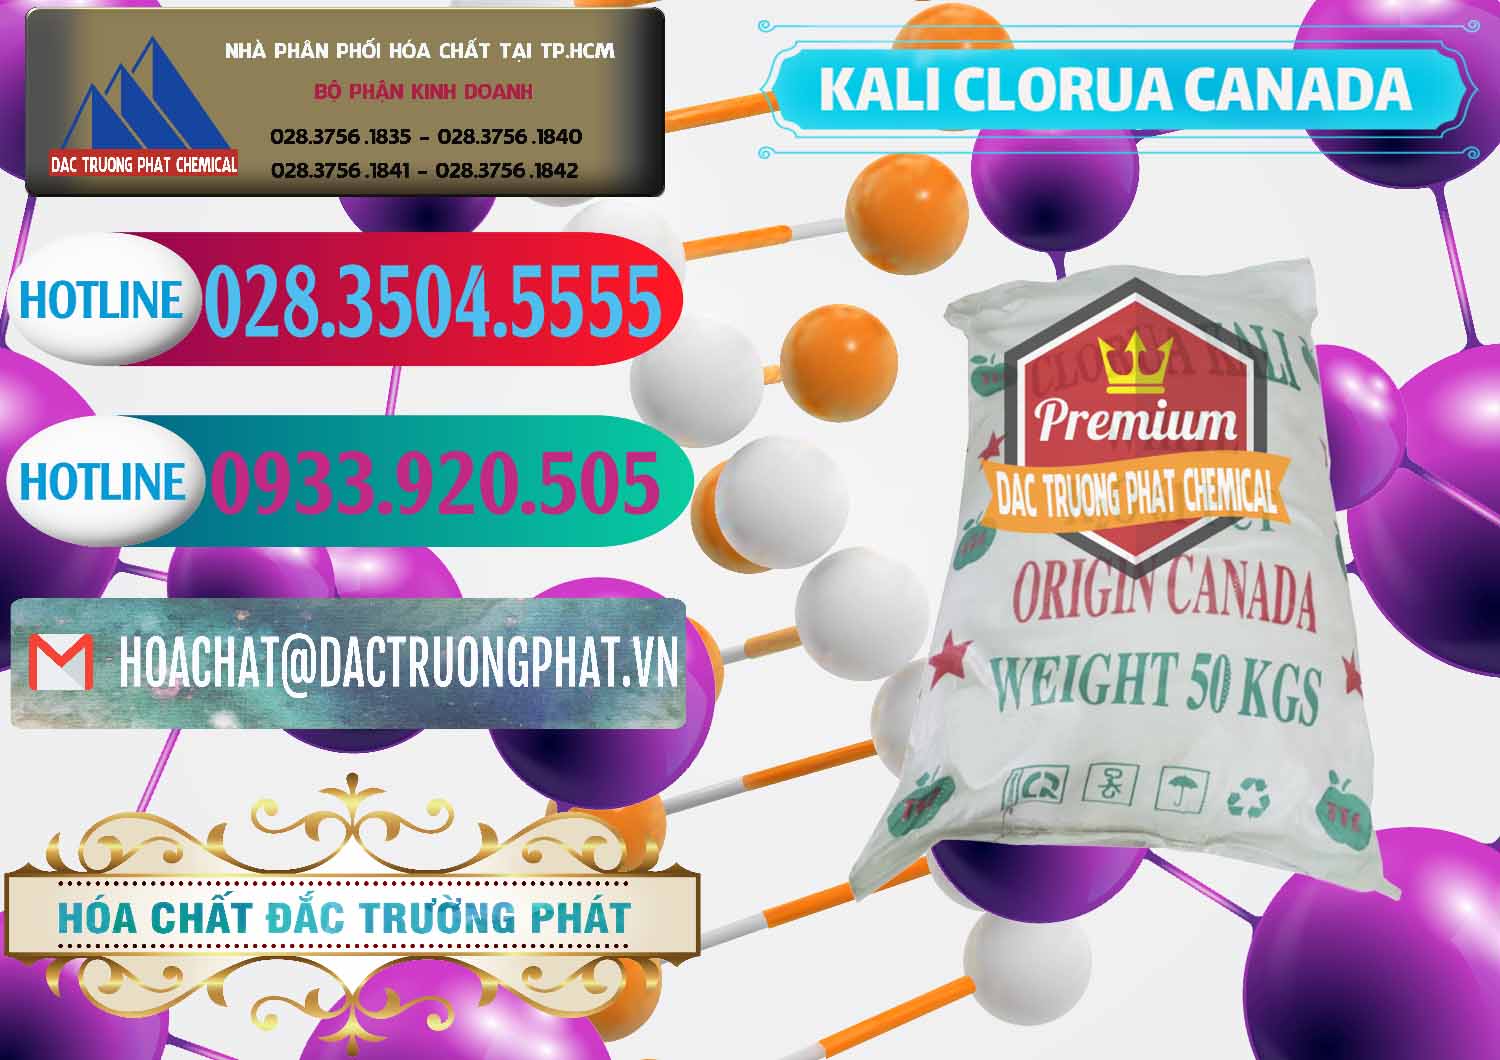 Đơn vị nhập khẩu và bán KCL – Kali Clorua Trắng Canada - 0437 - Nơi chuyên nhập khẩu & cung cấp hóa chất tại TP.HCM - truongphat.vn